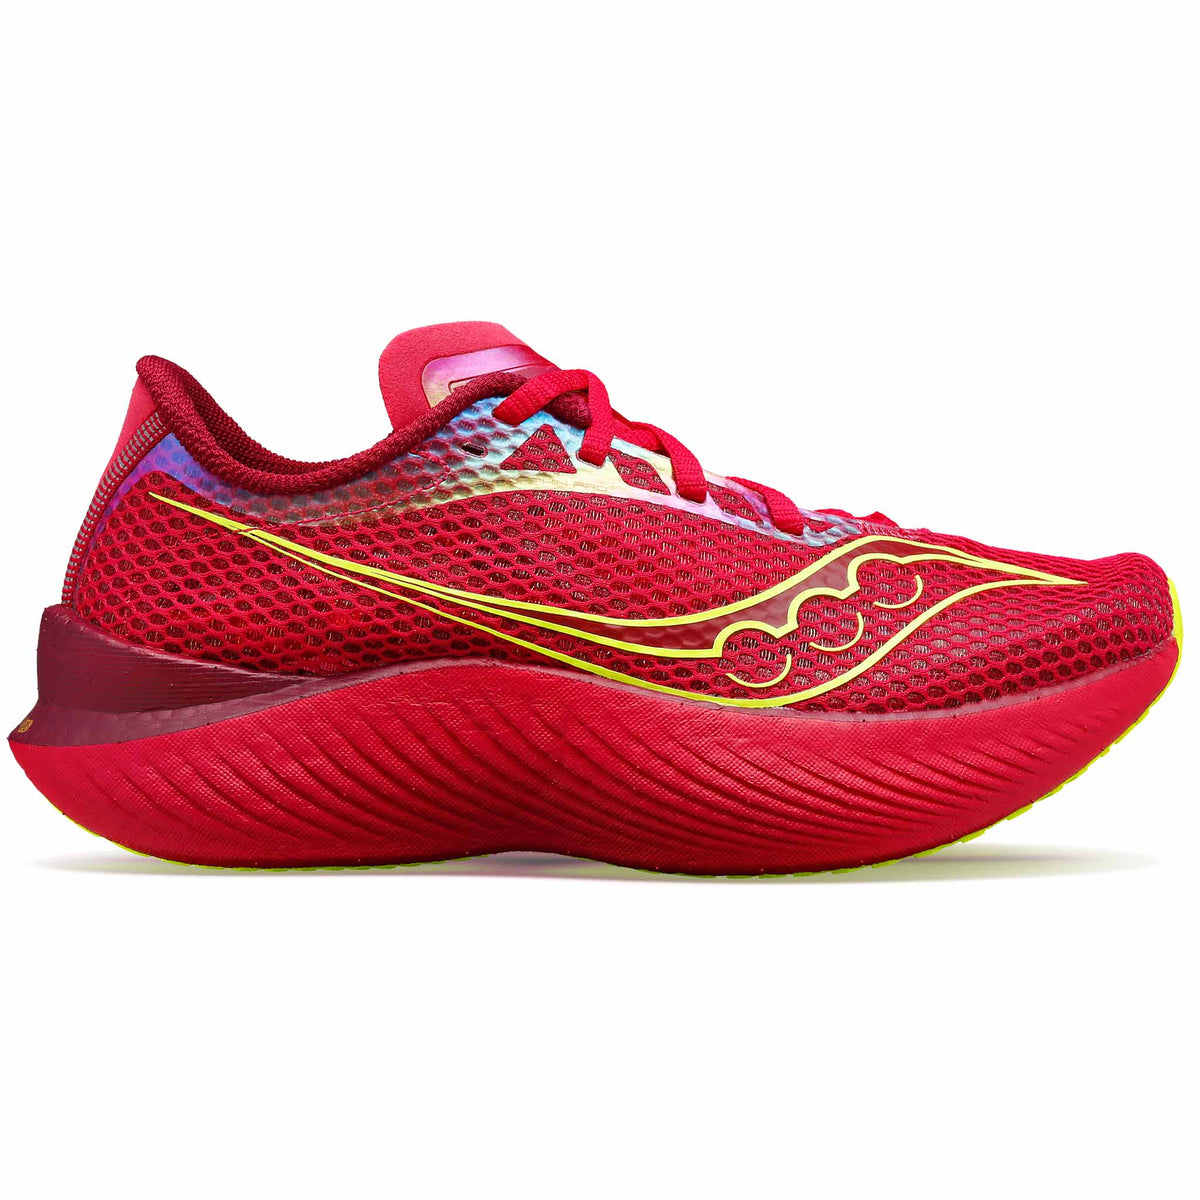 Saucony Endorphin Pro 3 chaussures de course pour femme - Rouge / Rose